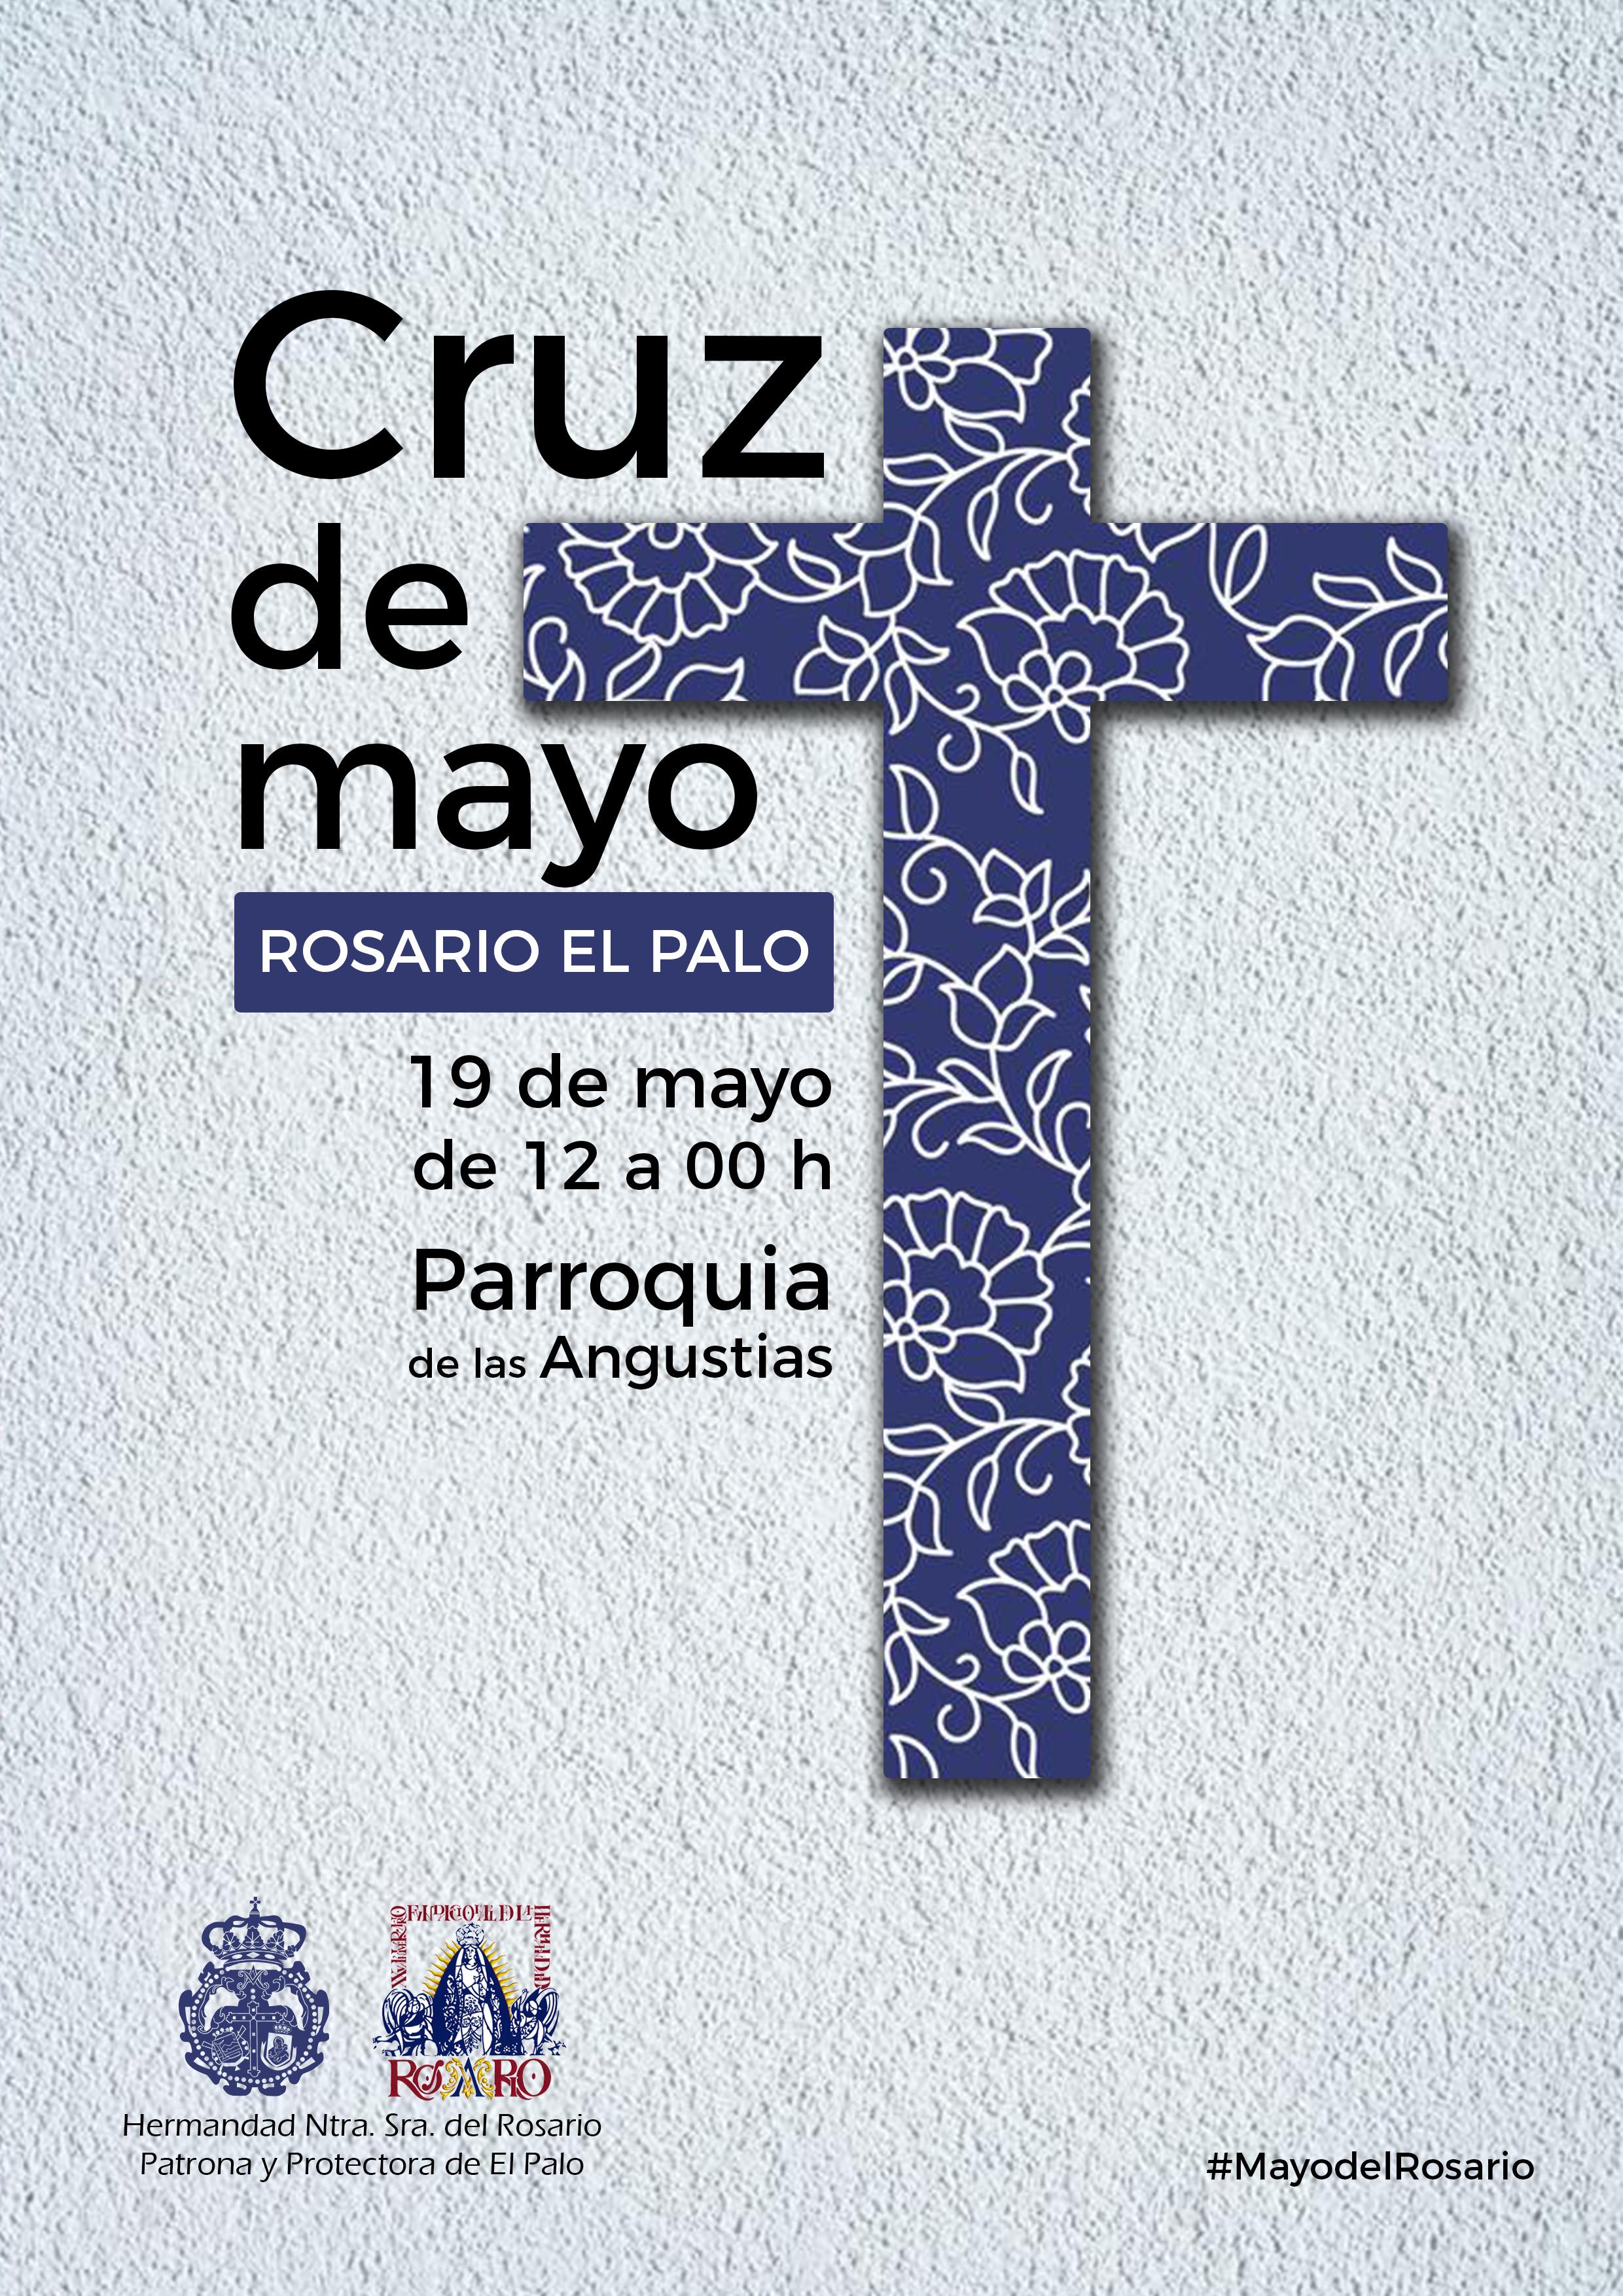 https://www.rosarioelpalo.org/wp-content/uploads/2017/11/Cruz-de-mayo-Cartel.jpg